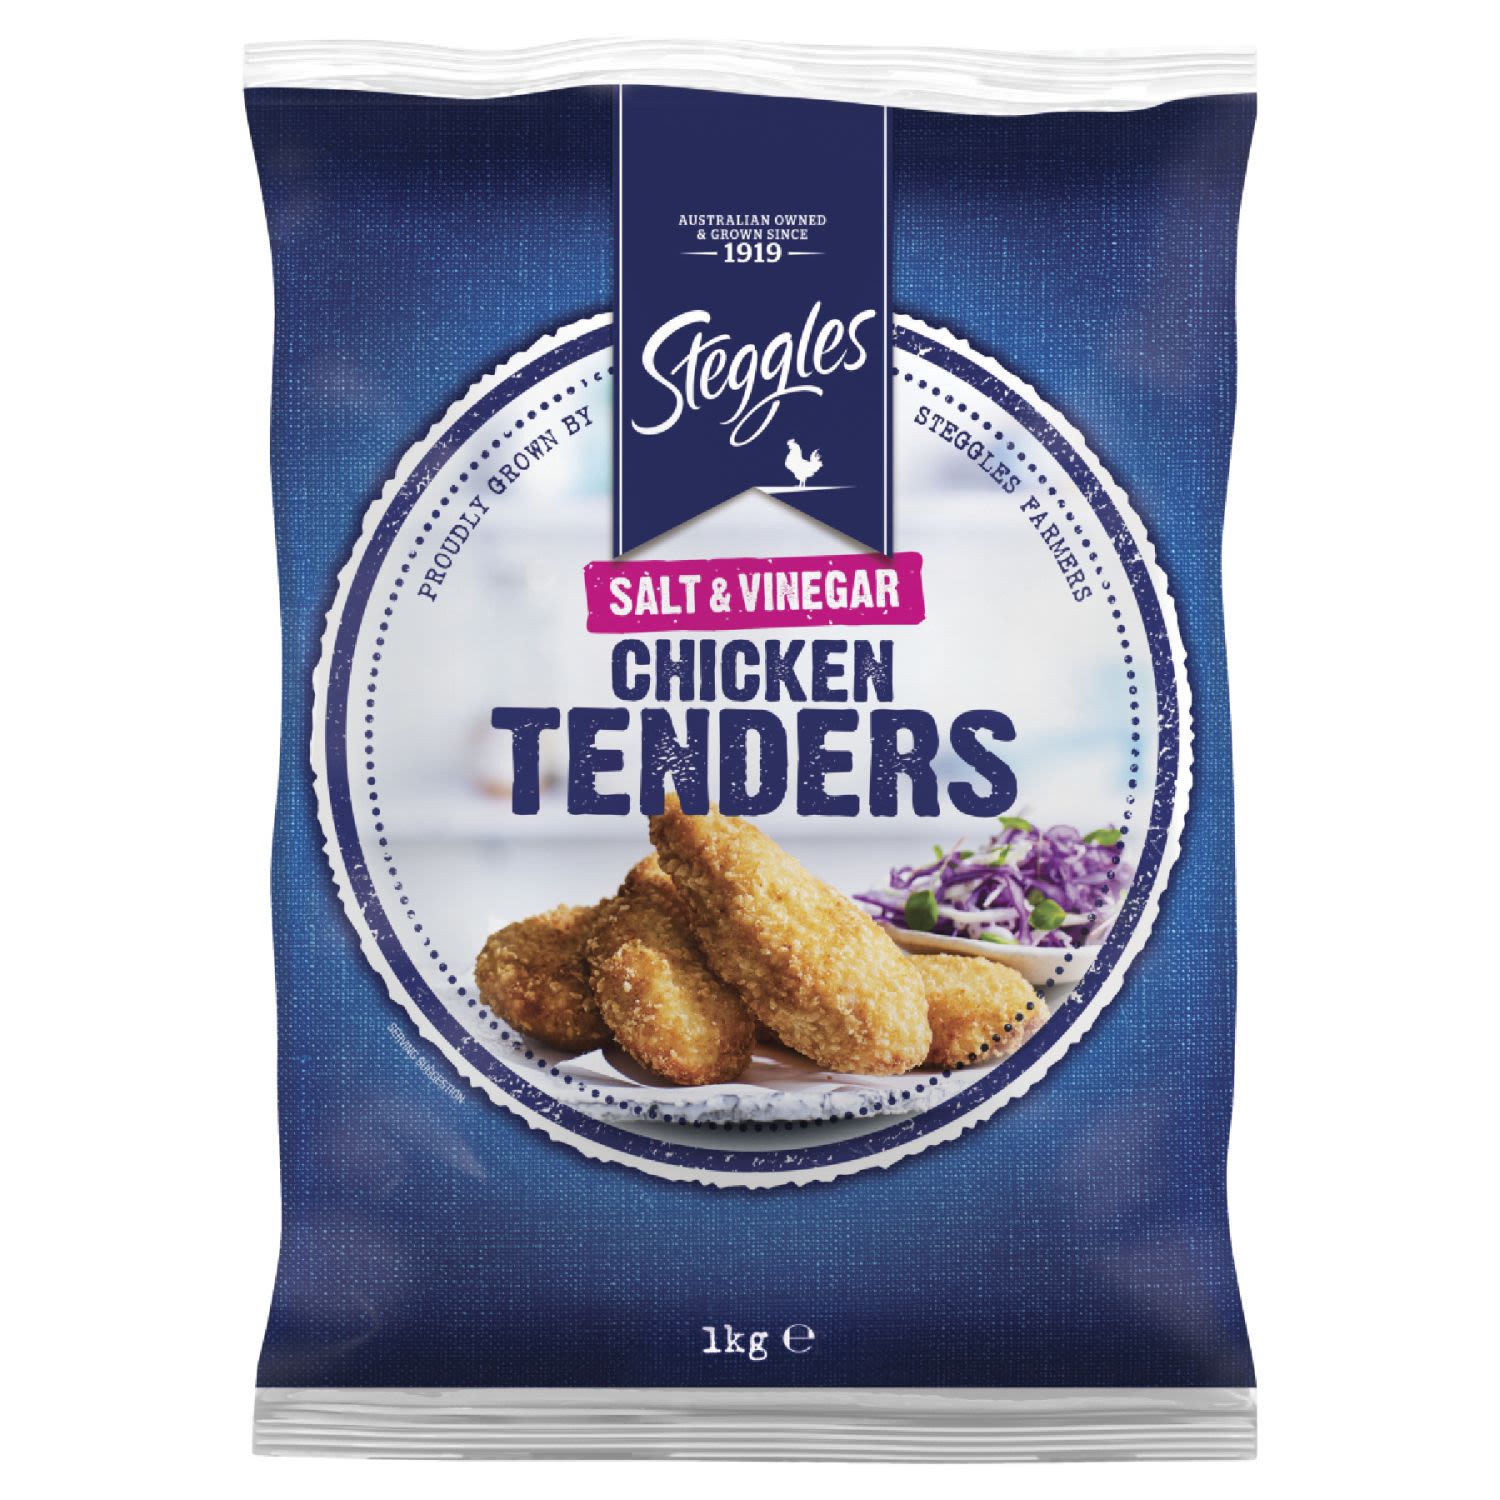 Steggles Chicken Tenders Salt & Vinegar, 1 Kilogram